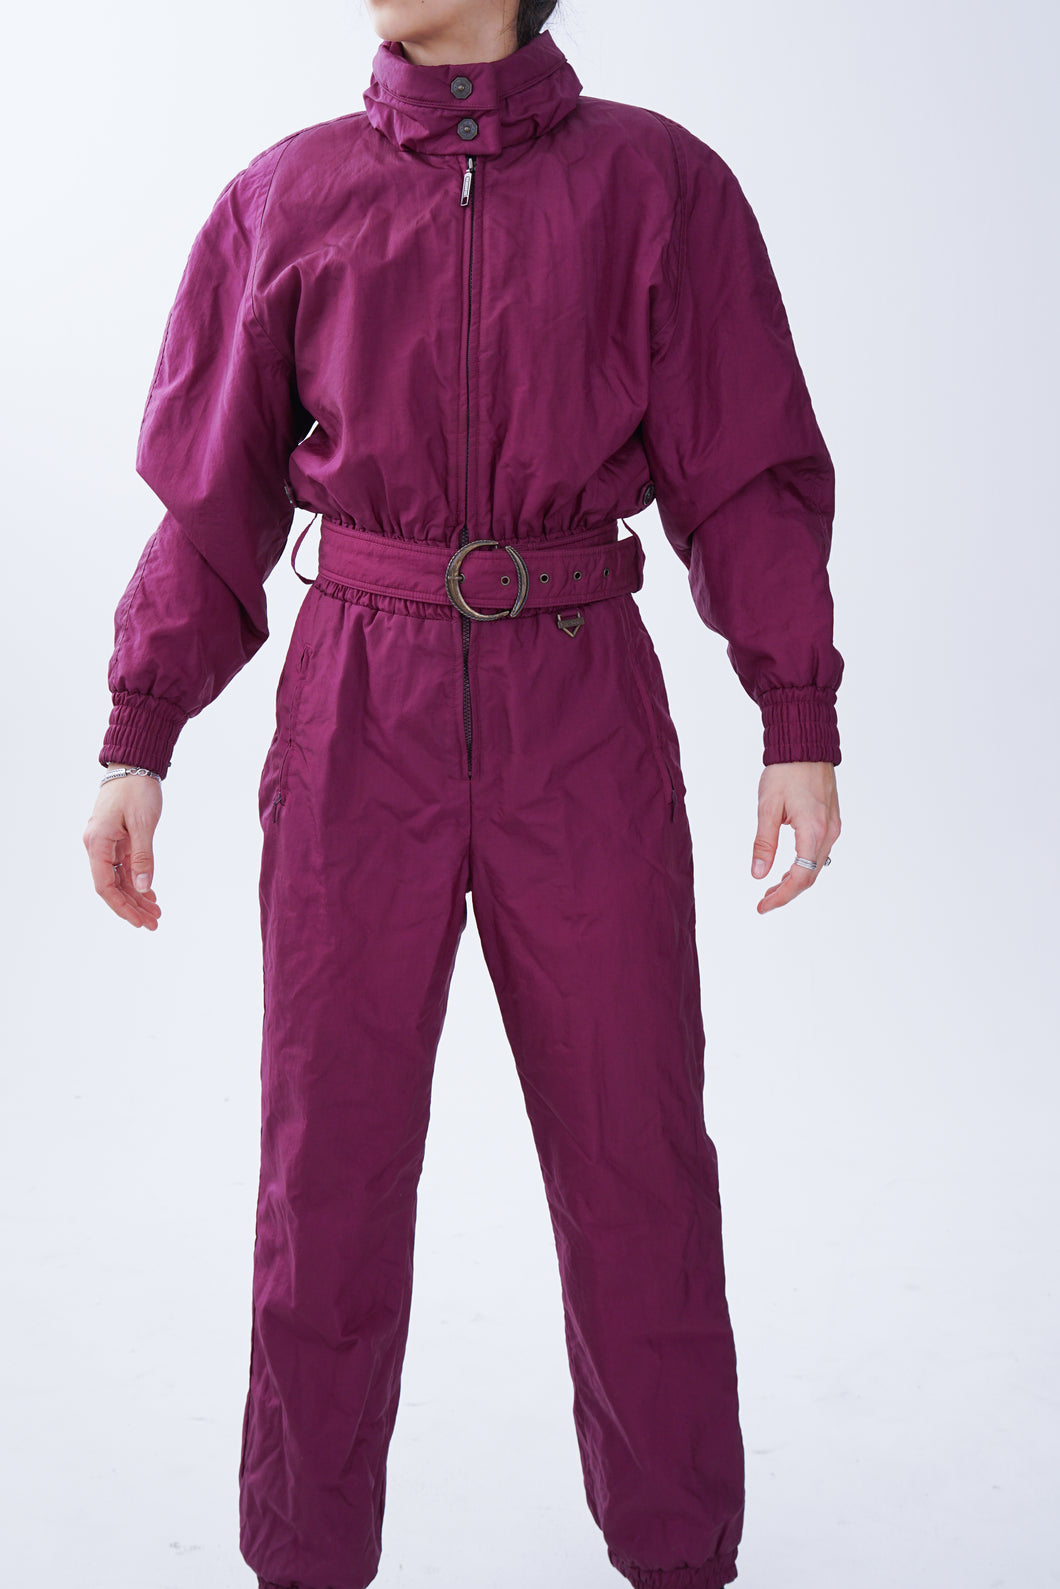 One piece vintage Fera Skiwear ski suit, snow suit mauve métallique pour femme taille 10